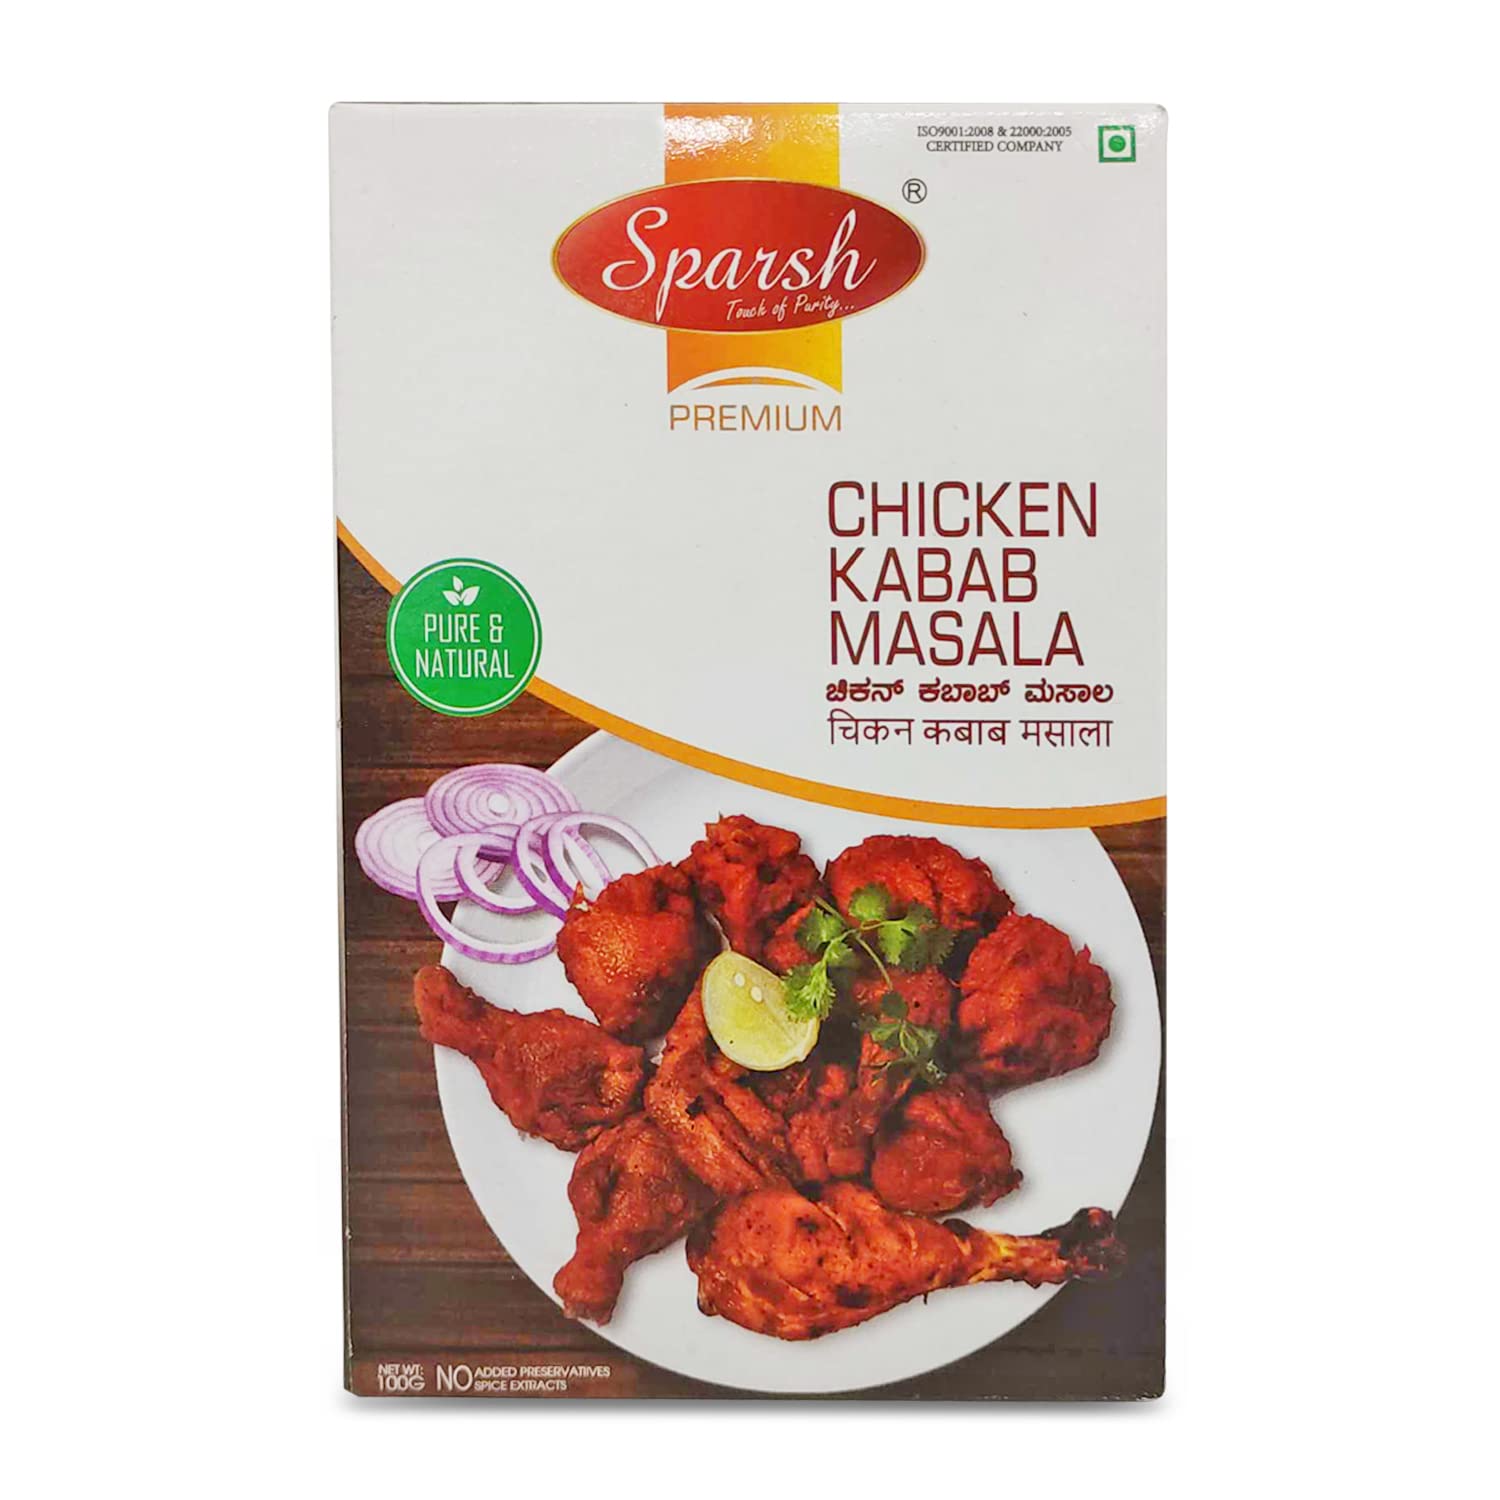 Sparsh Chicken Kabab Masala Powder premium , 100g